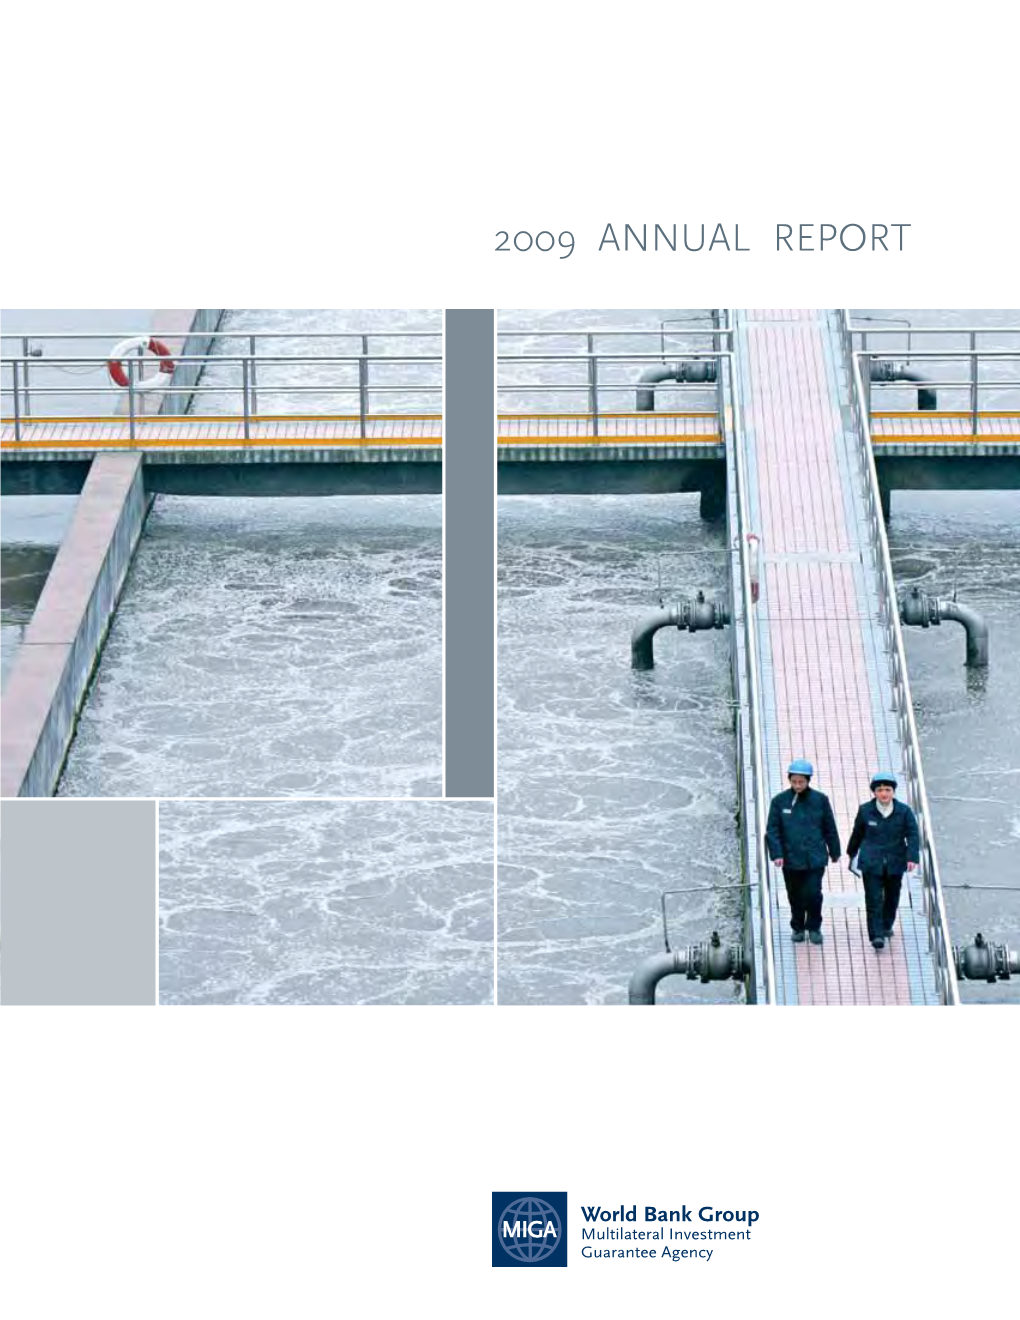 2009 Annual Report MIGA’S Mission